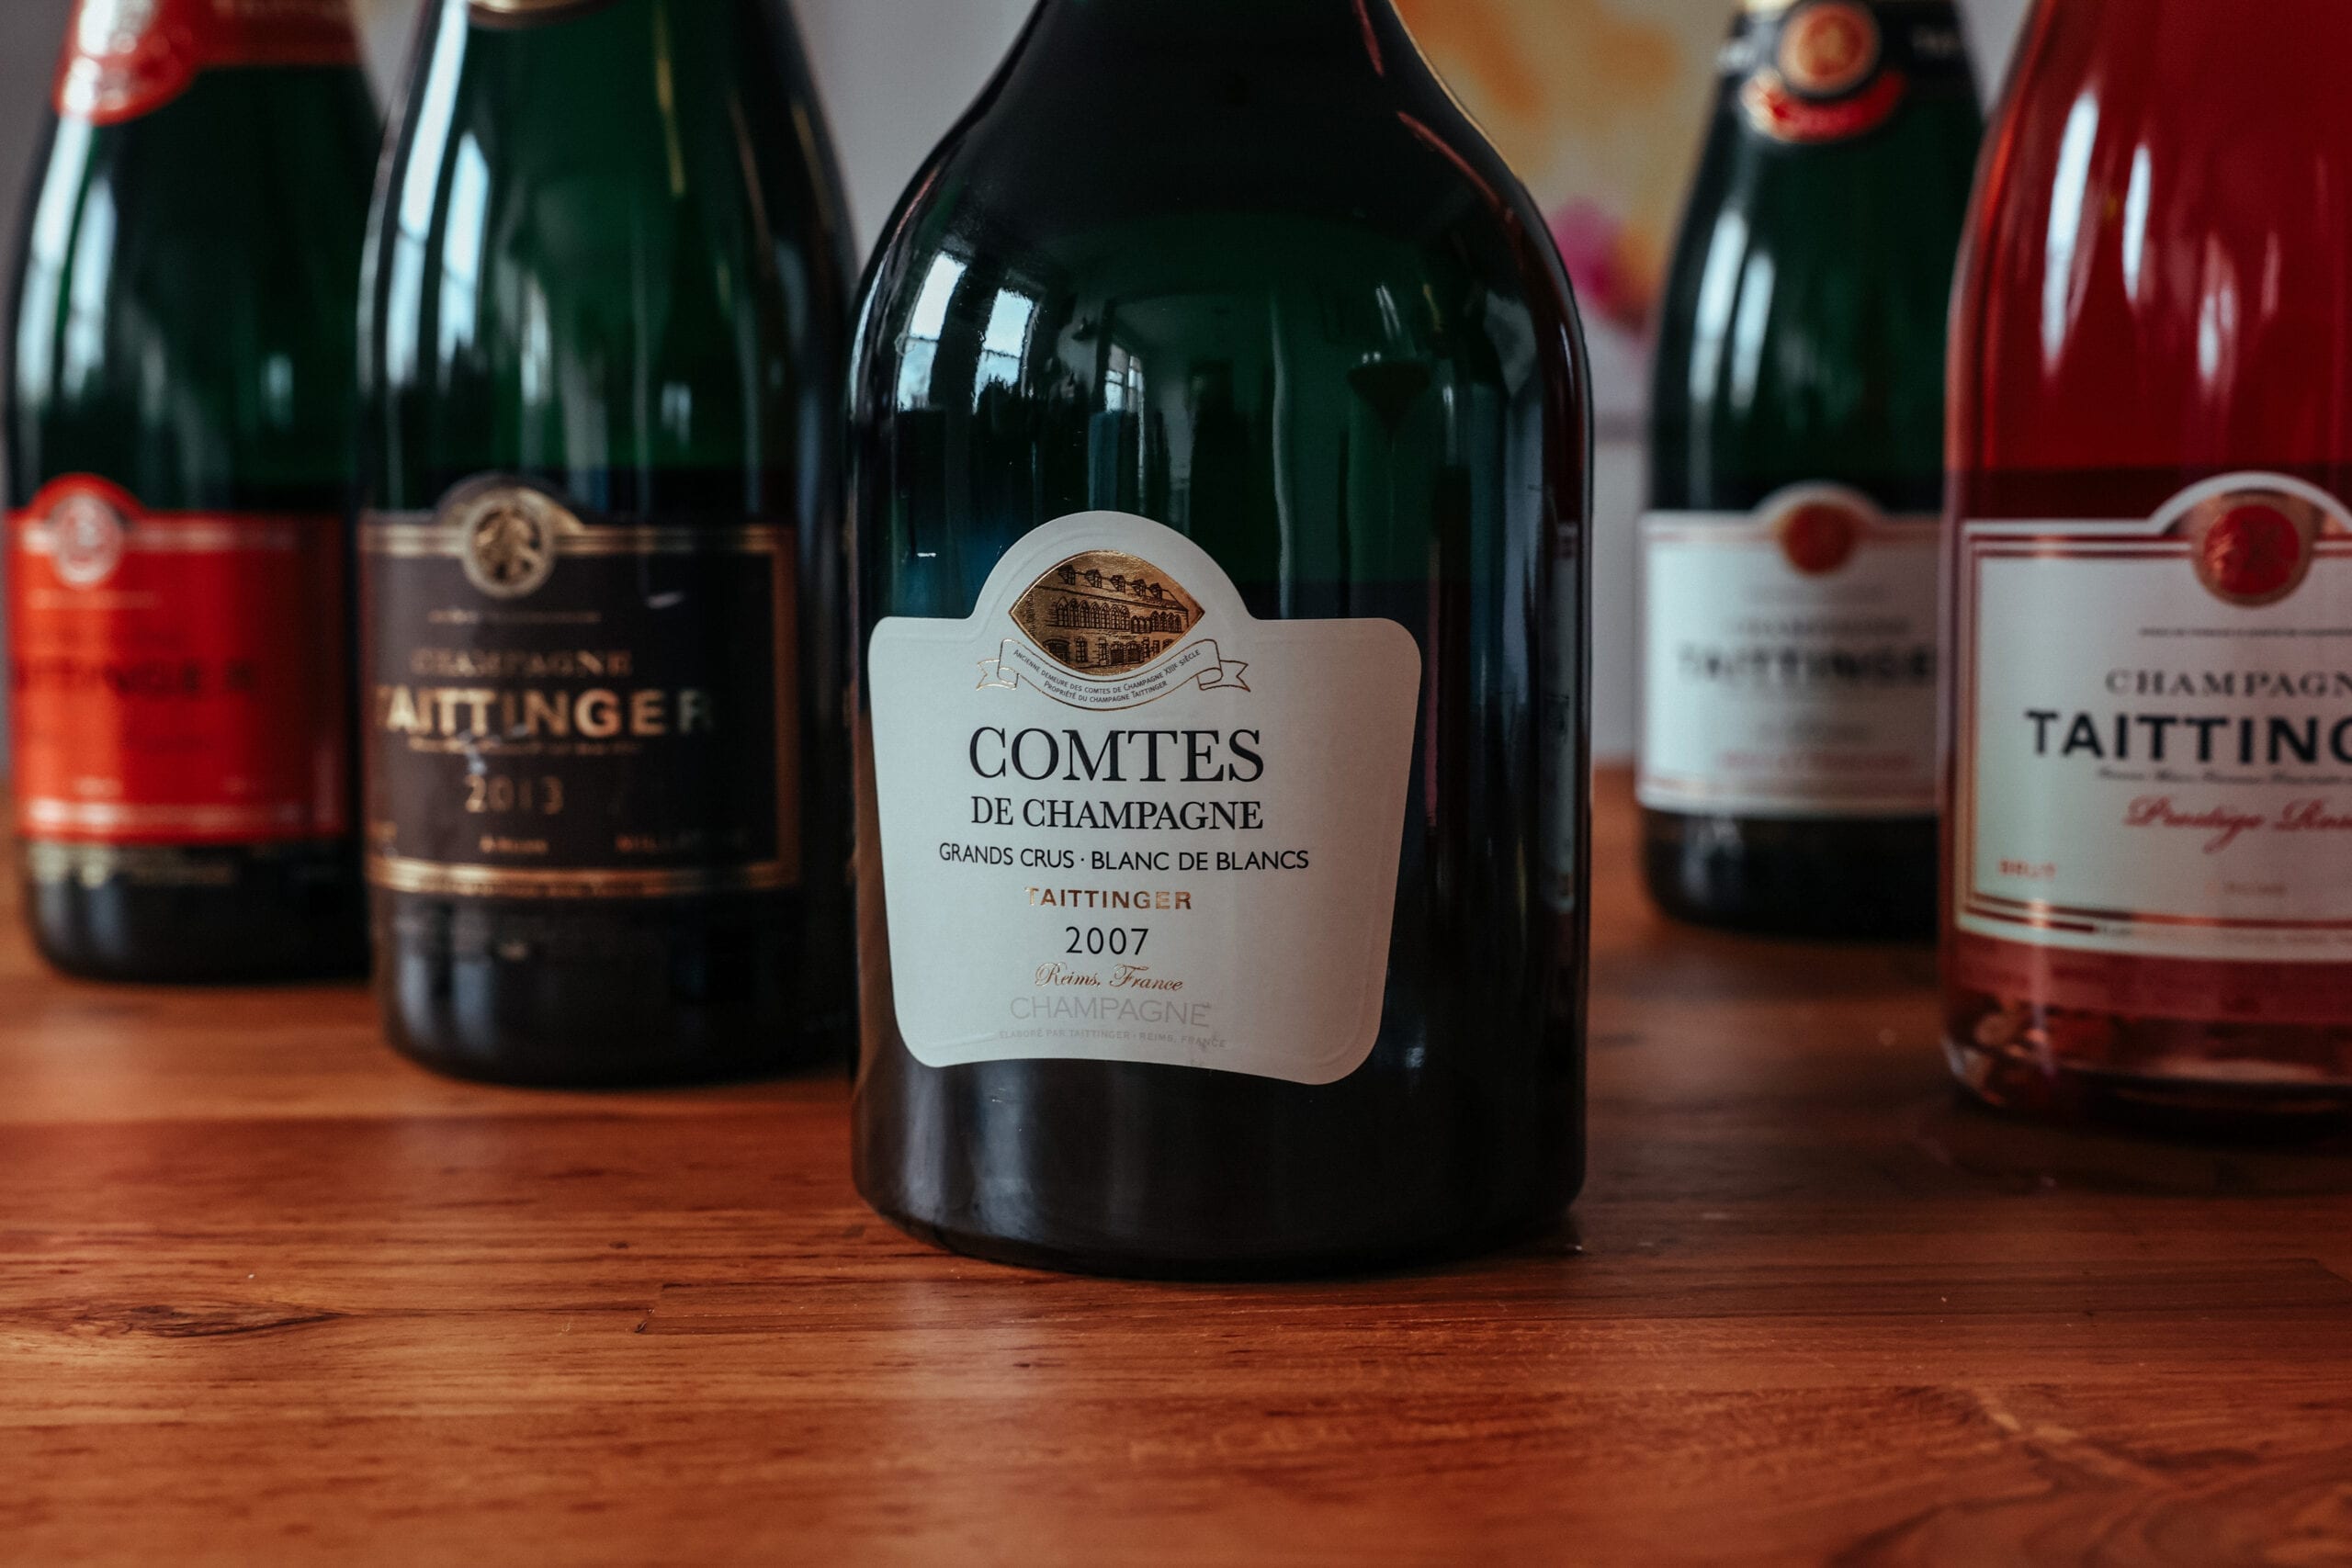 Champagne wine bottles, Taittinger